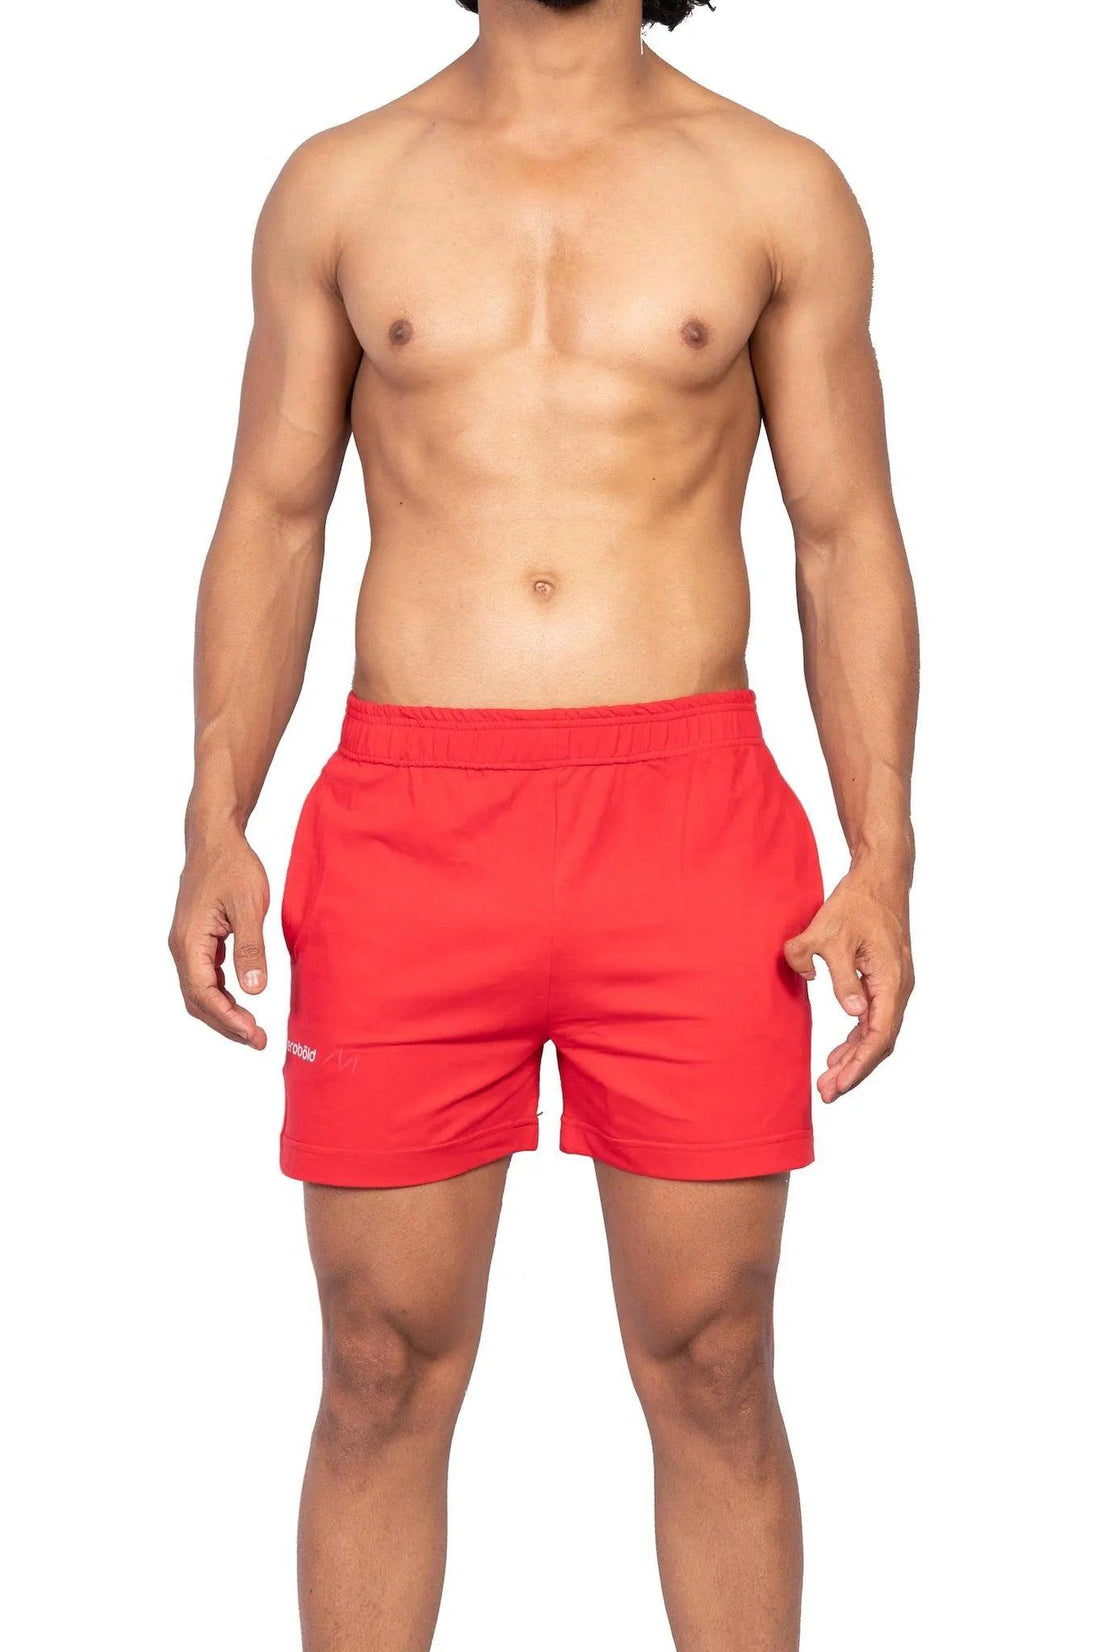 Shorts - Inferno Blaze Shorts - Red - Erobold - 